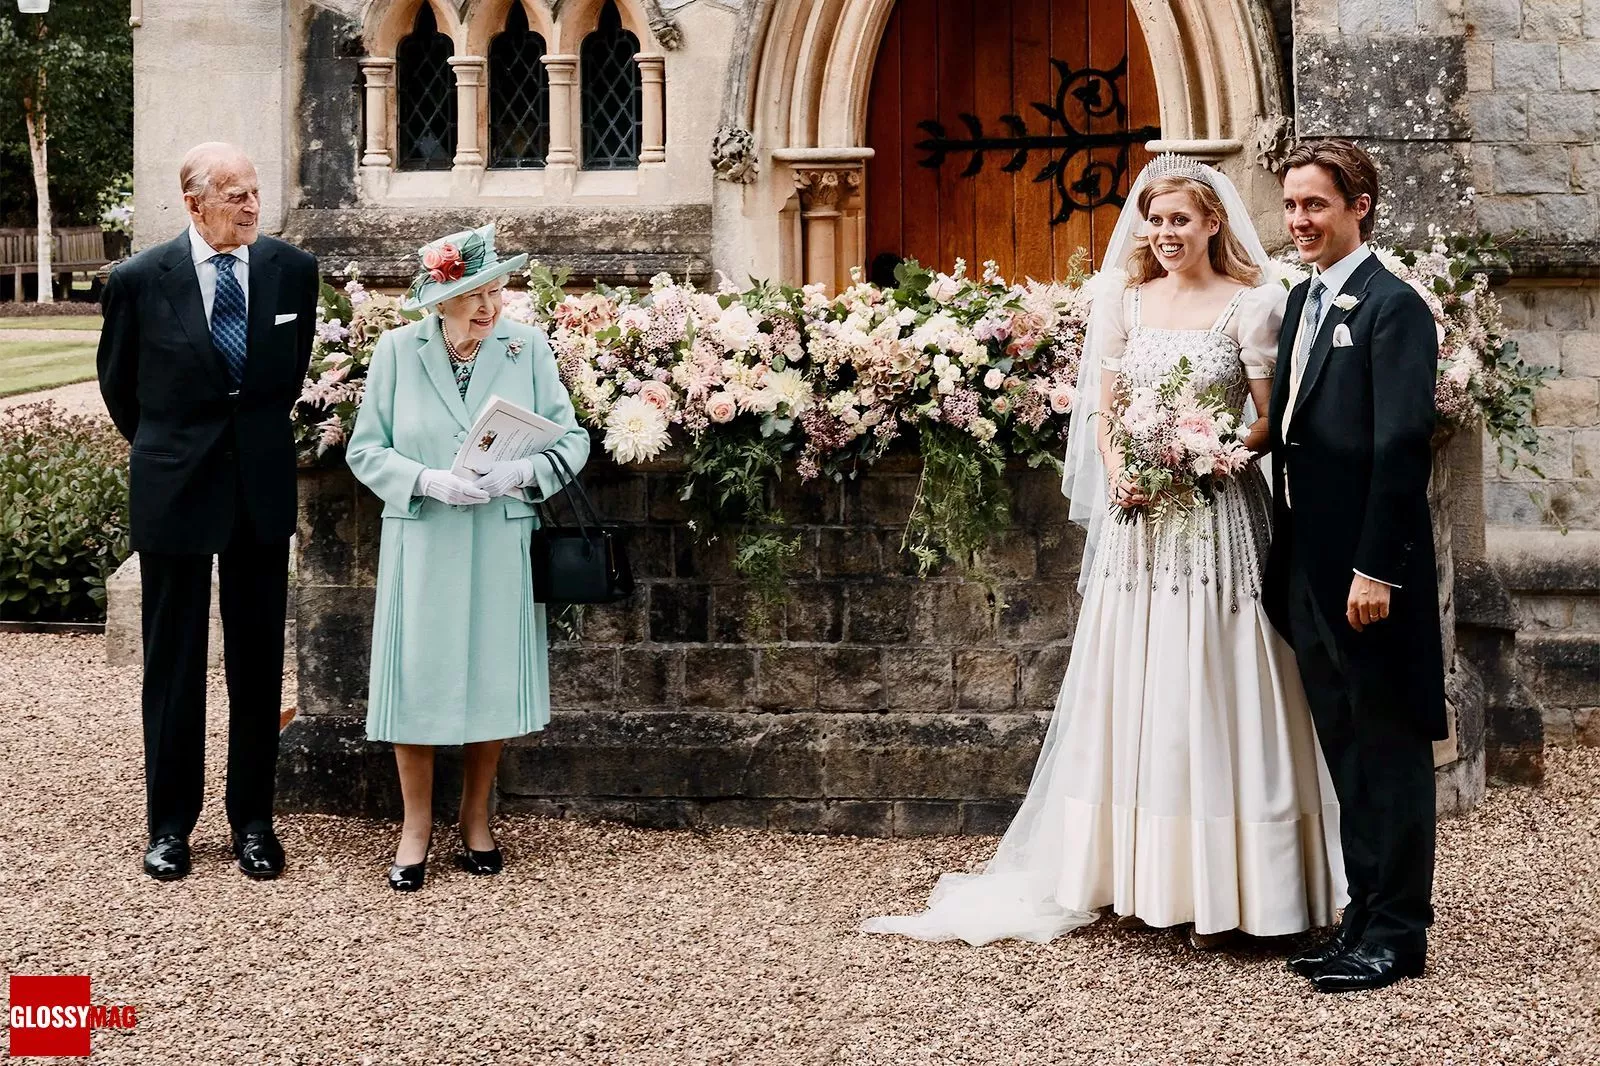 Принц Филипп и королева Елизавета II на свадьбе Беатрисы Йоркской и Эдоардо Мапелли-Моцци, 17 июля 2020 г.